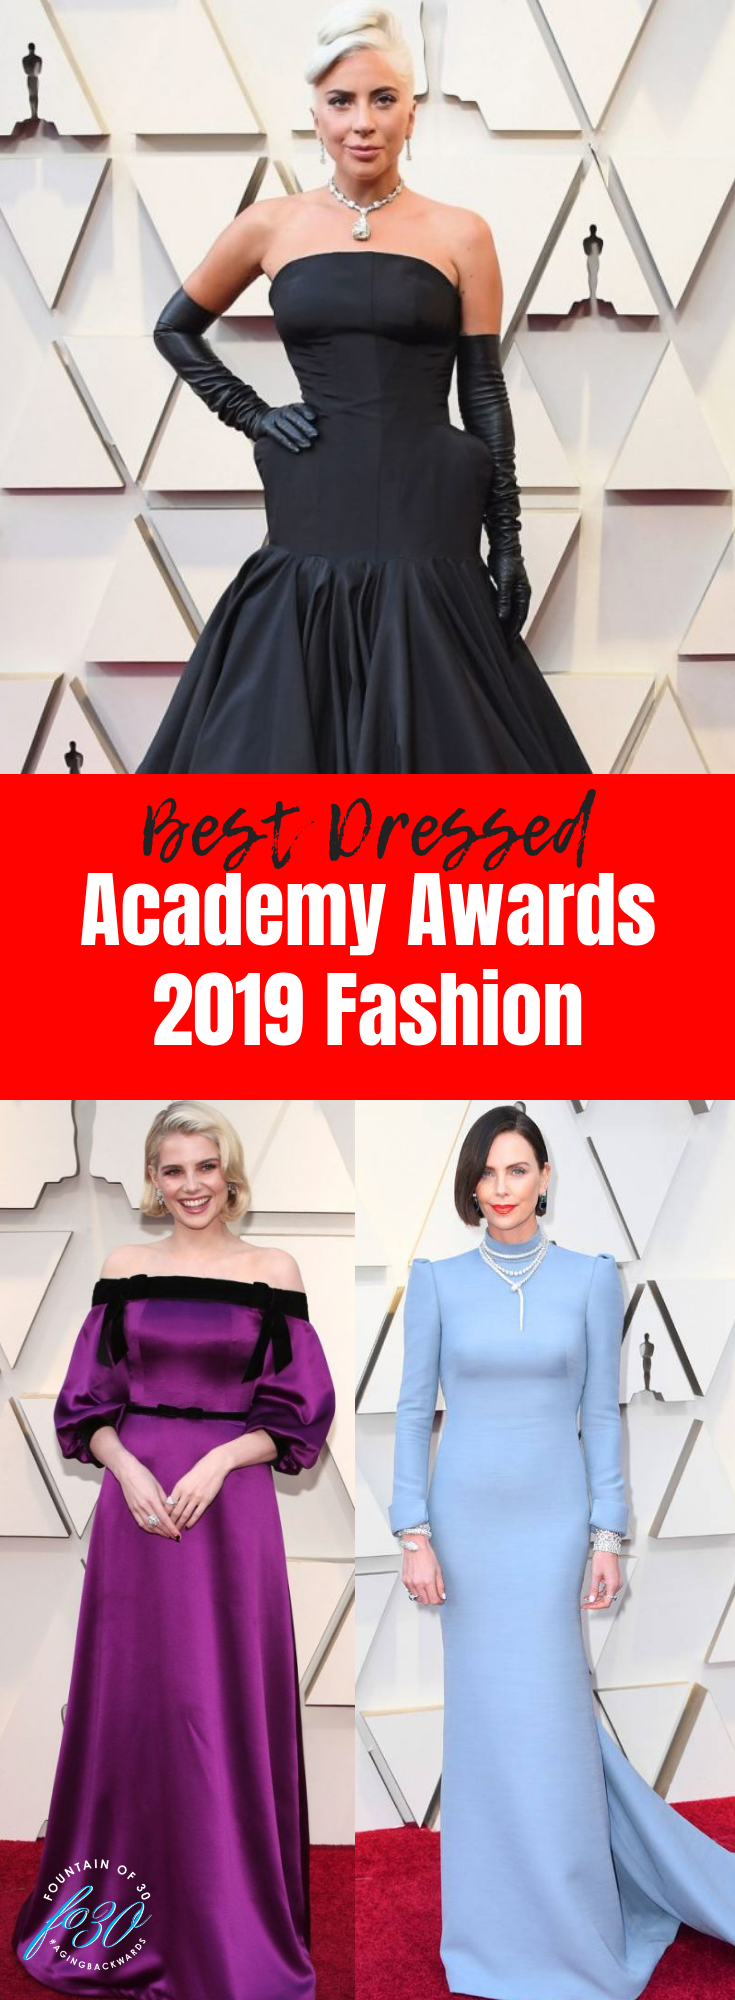 Academy Awards 2019 fashion best dressed lady gaga